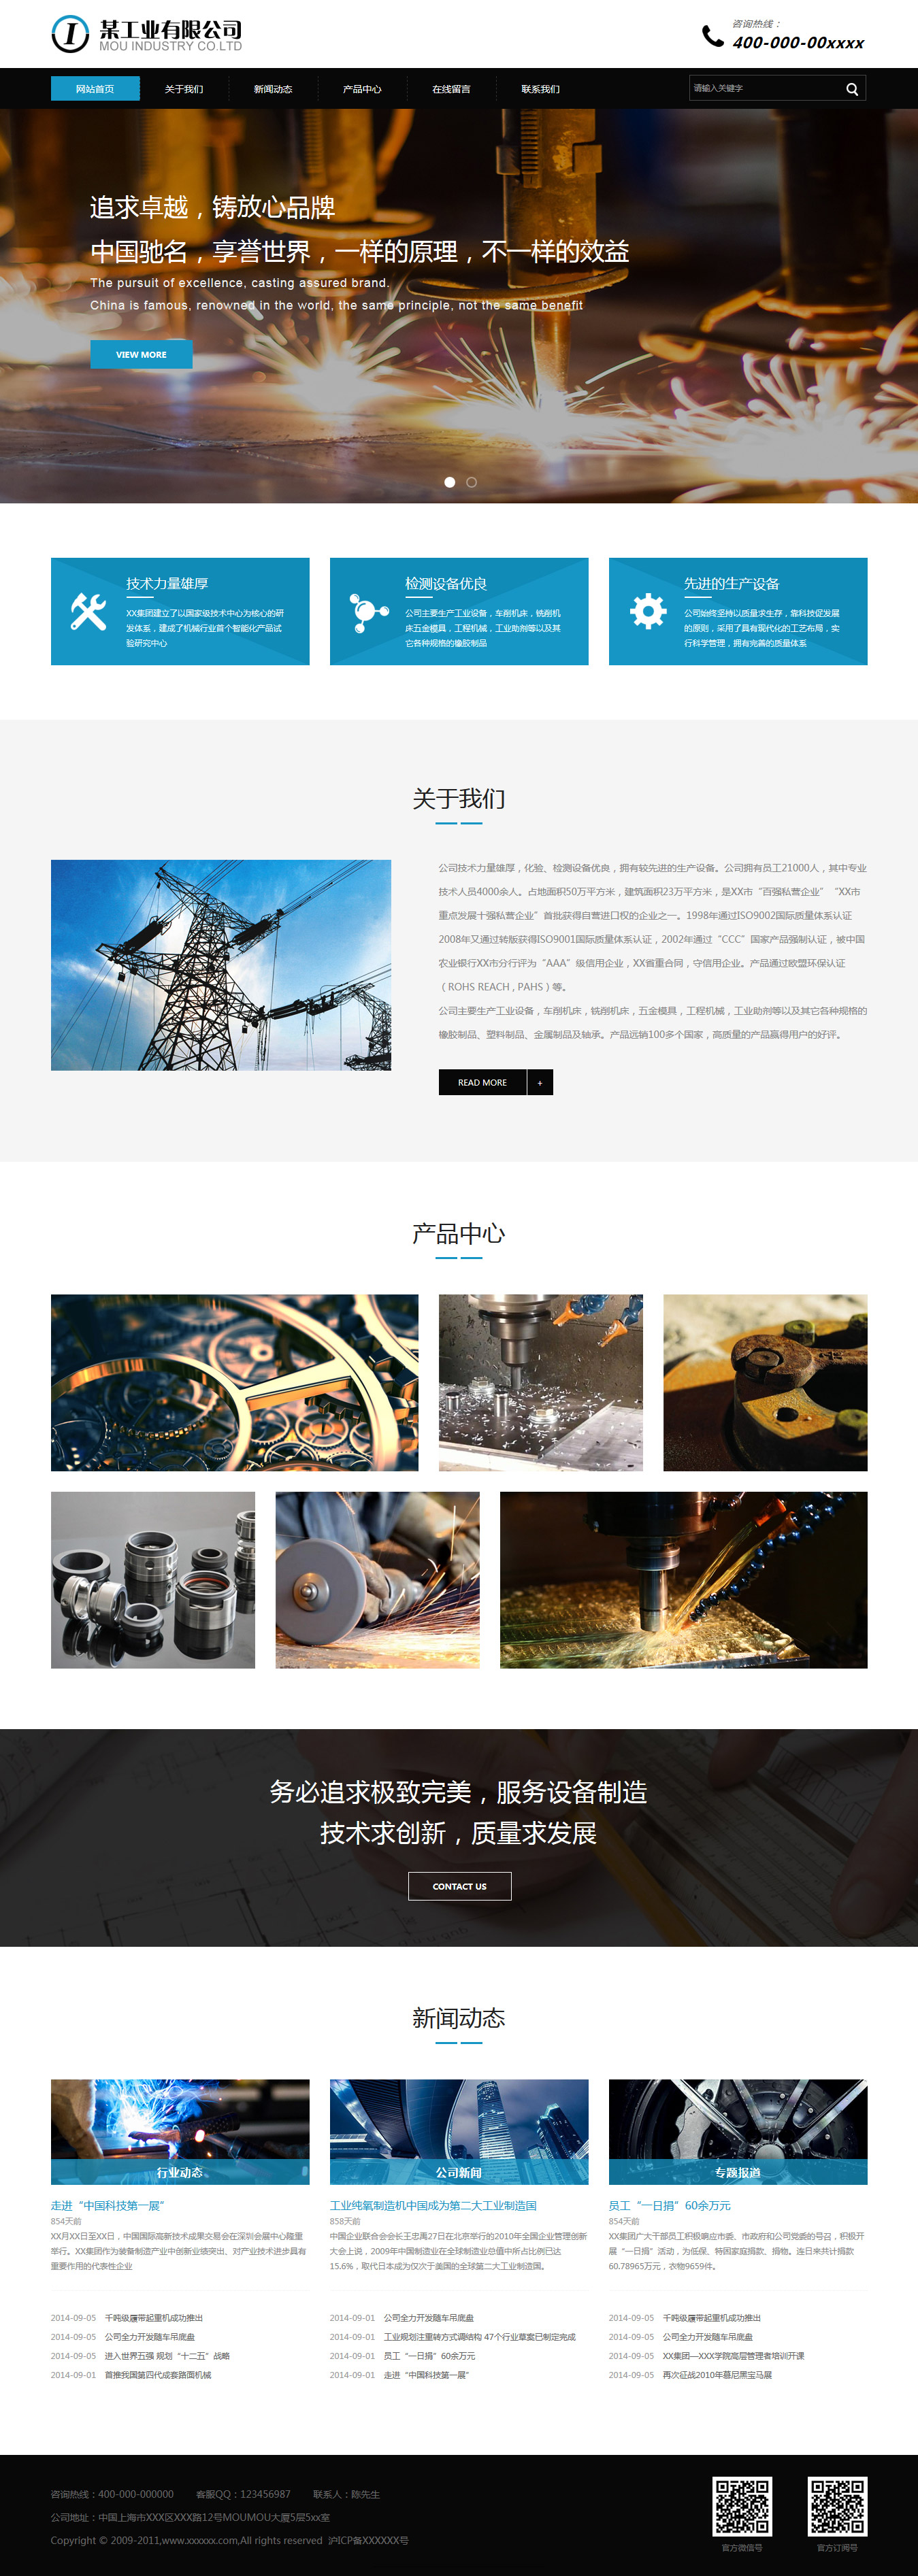 机械、工业制品网站模板-industrial-1350621